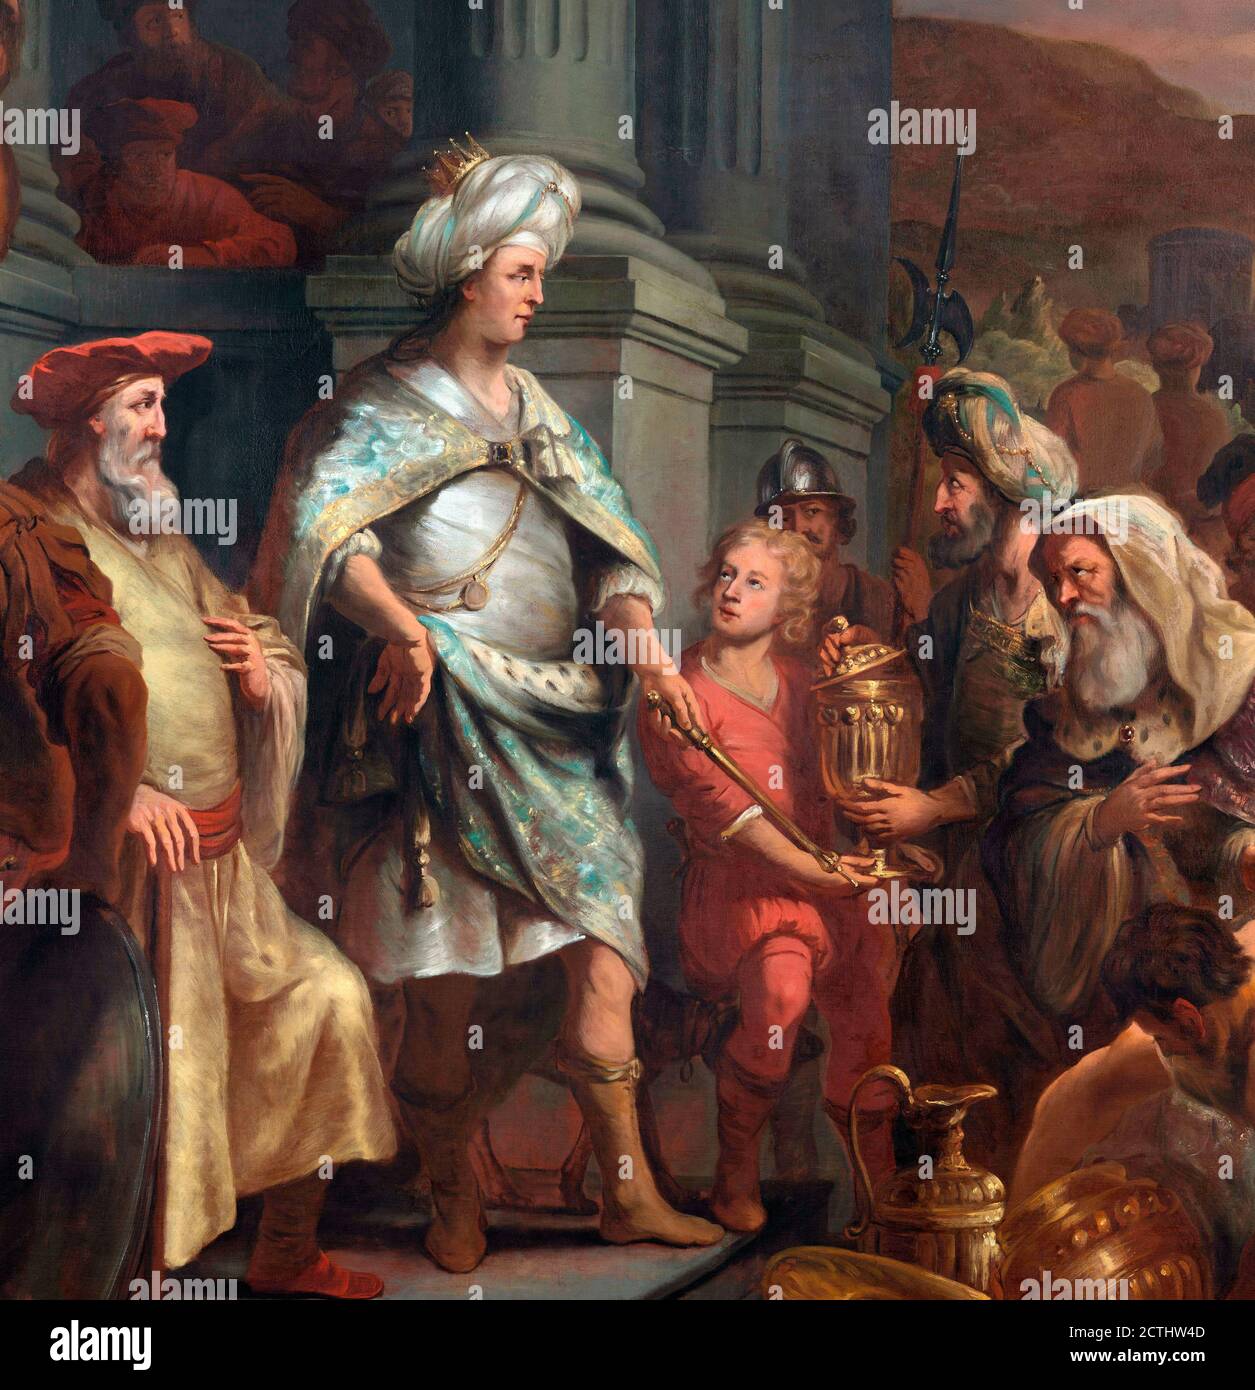 Cyrus le Grand.Le roi Cyrus qui cède le Trésor pillé du Temple de Jérusalem, peinture de Ferdinand bol (1616-1680), huile sur toile, 1655-1669.Détails d'une illustration plus grande, 2CTHW45 Banque D'Images